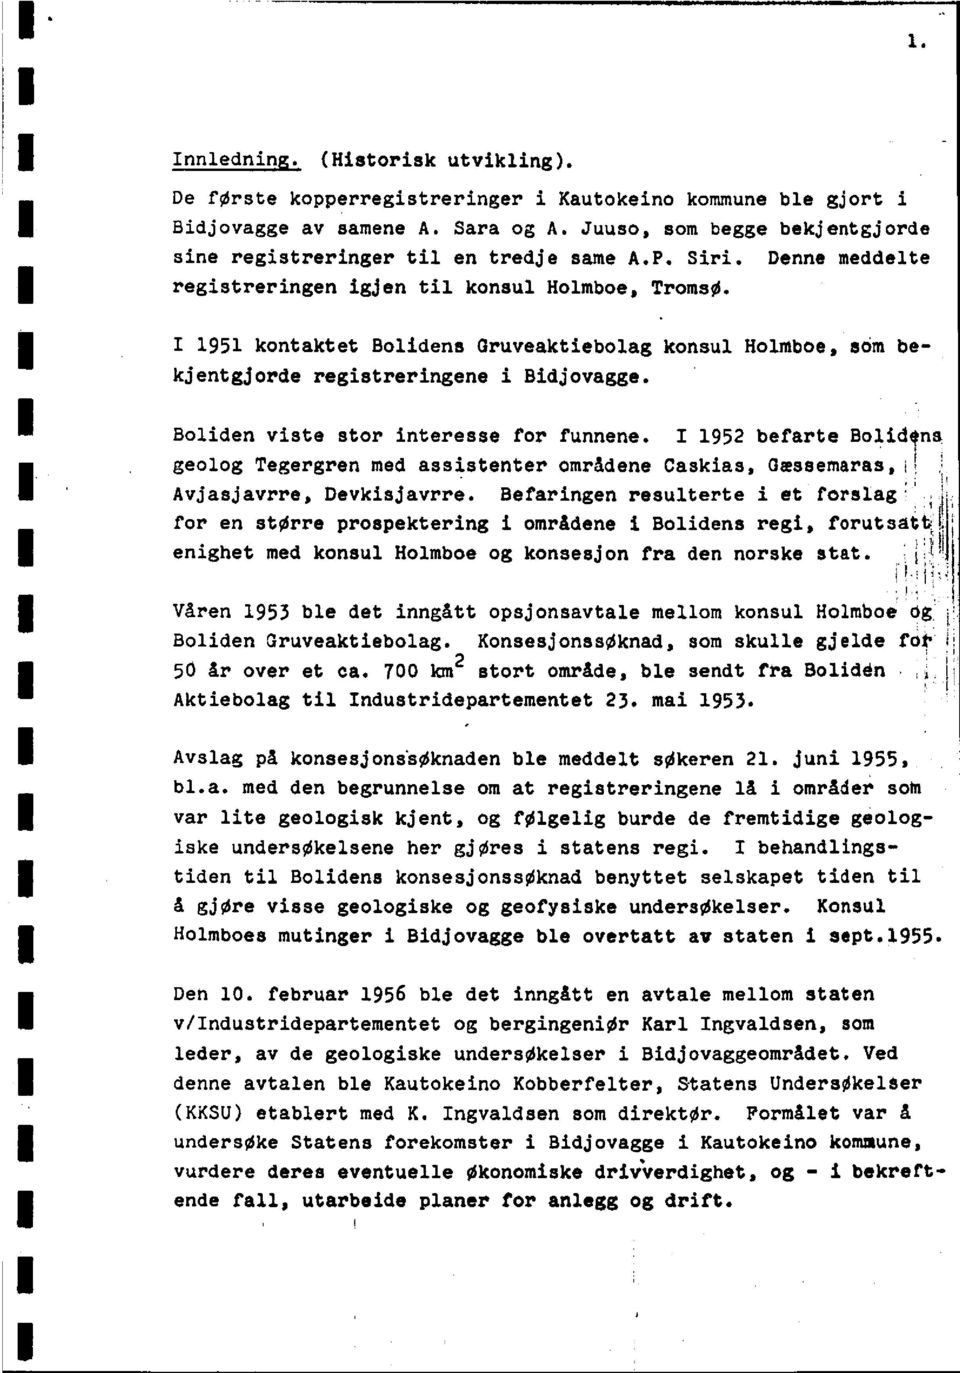 I 1952befarteBolidens geologtegergrenmed assistenterområdenecaskias,chessemaras,t1 Avjasjavrre,Devkisjavrre.